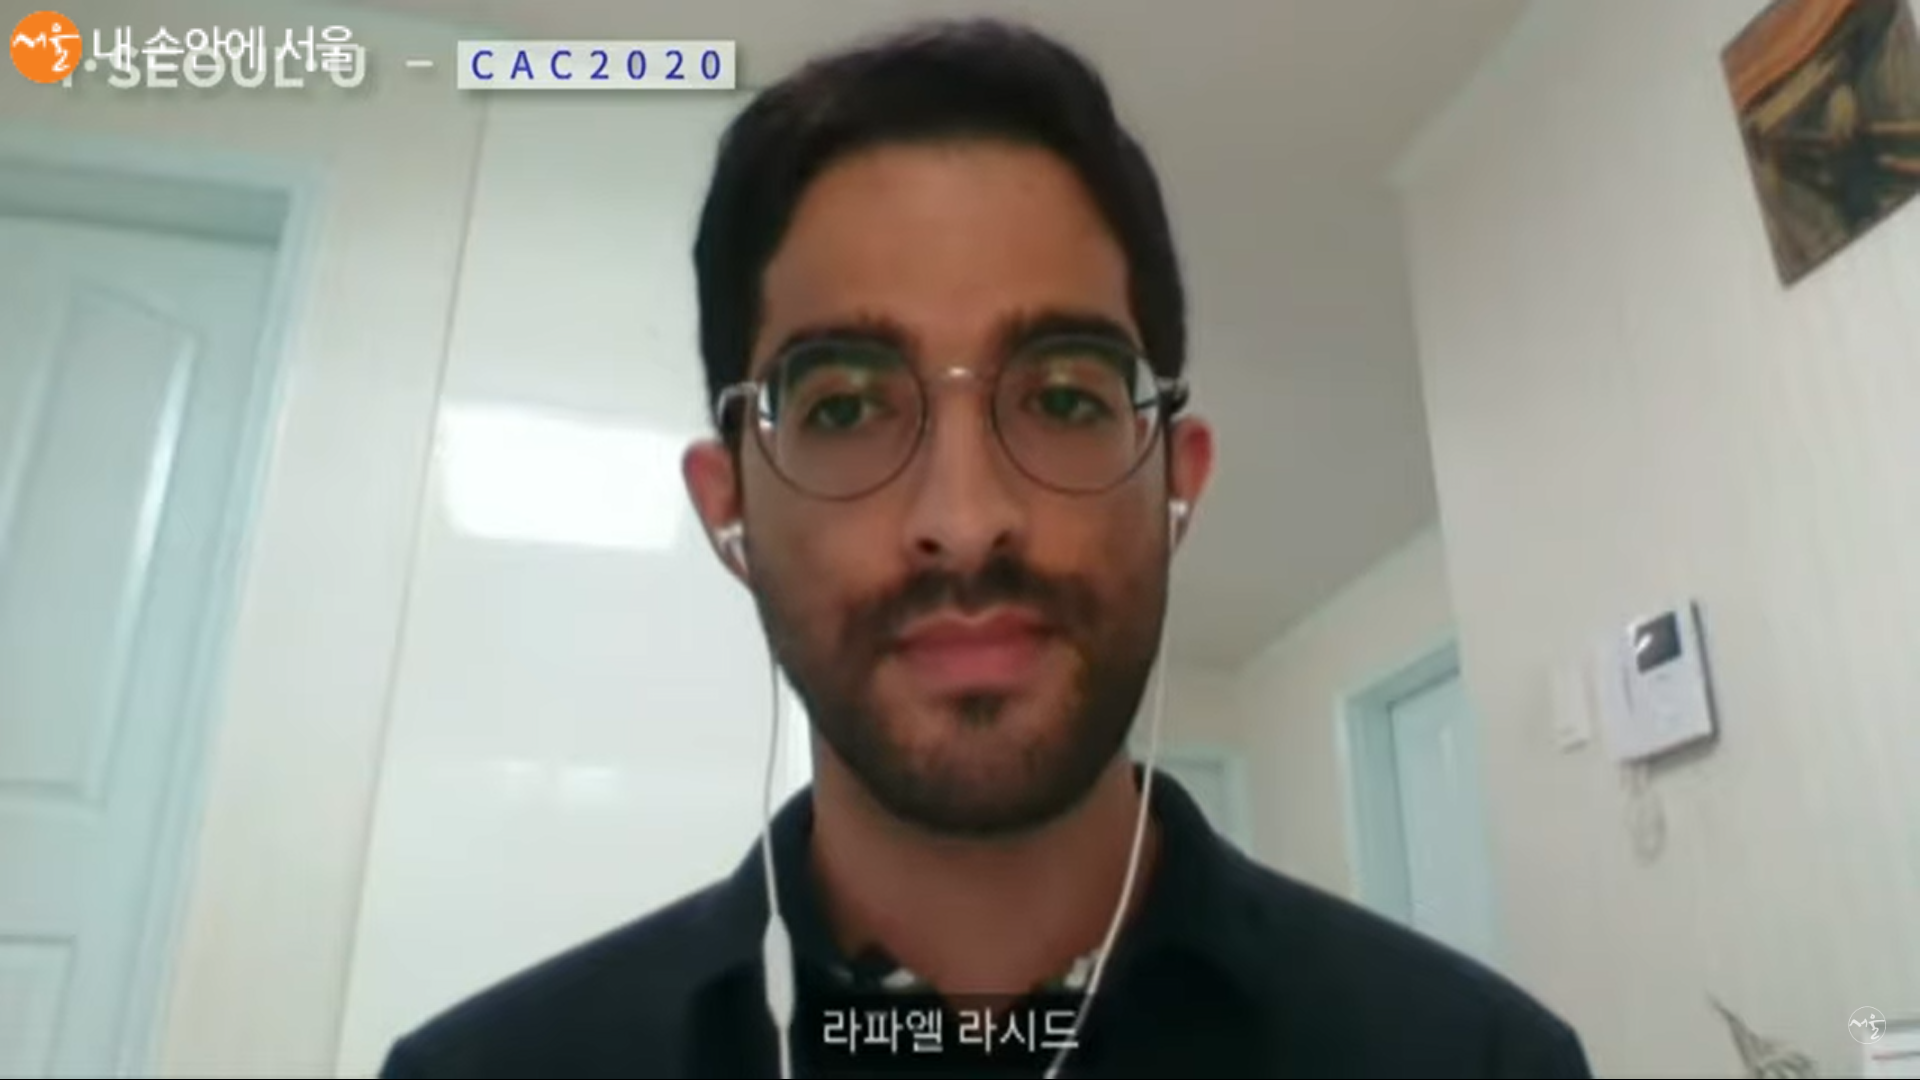 한국의 코로나19 대응에 대한 외신 의견을 전달하는 라파엘 라시드 기자 